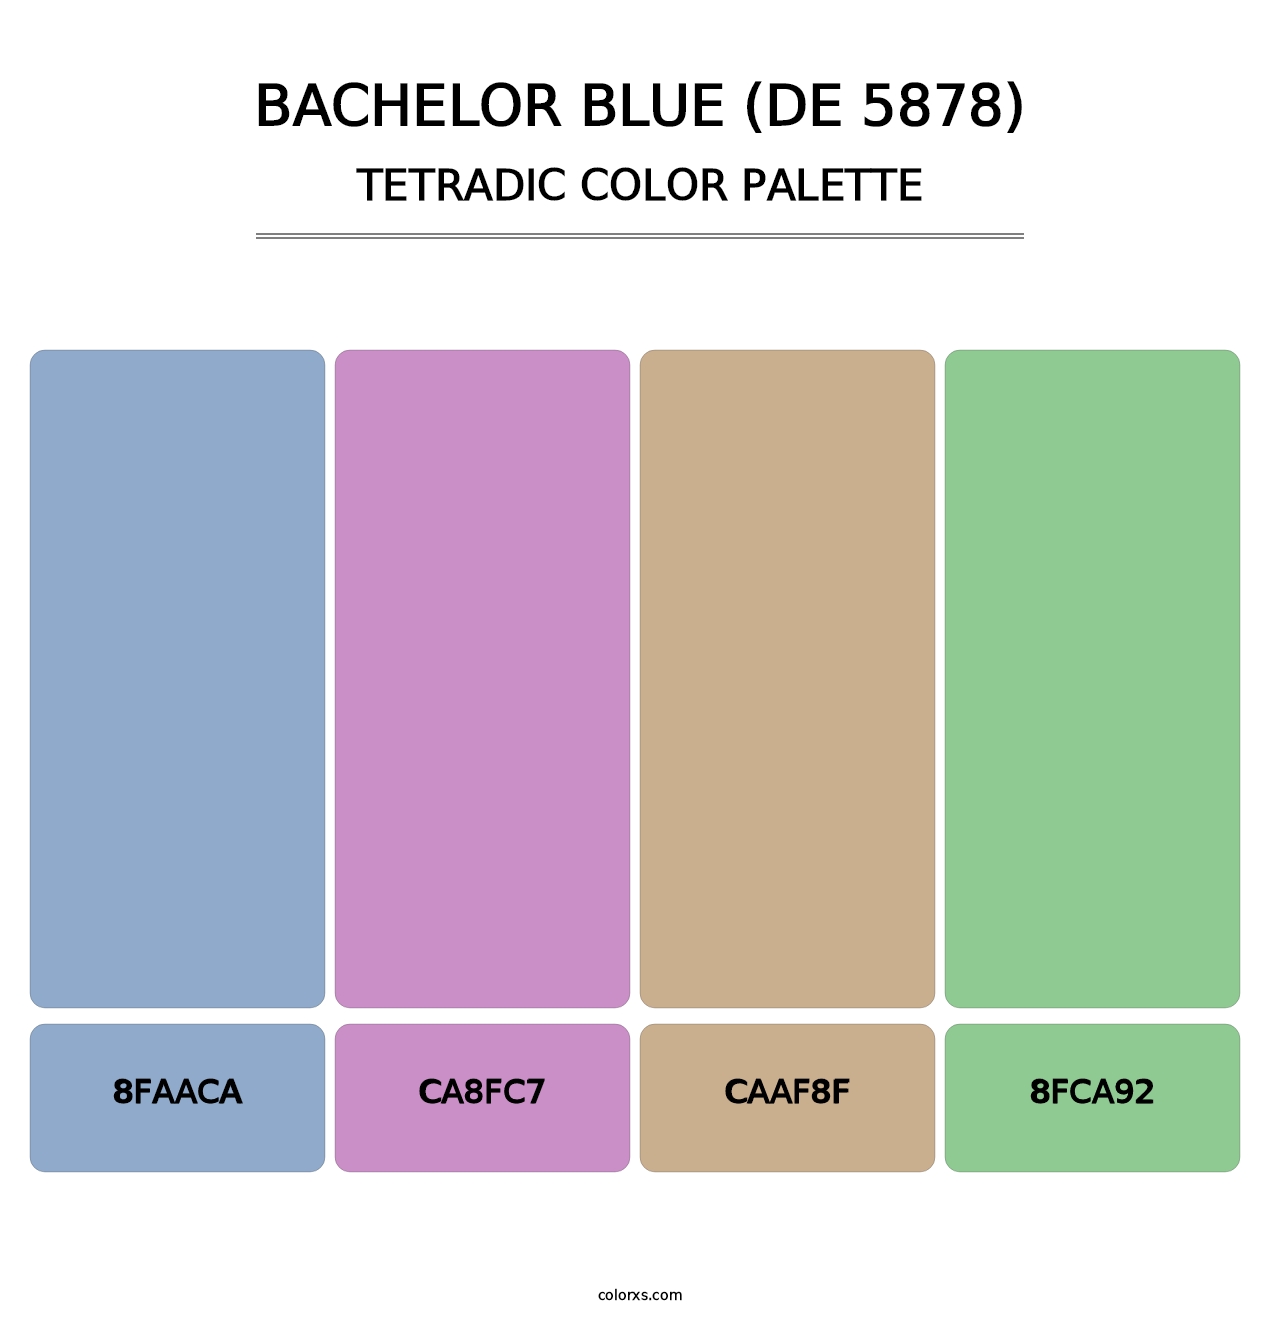 Bachelor Blue (DE 5878) - Tetradic Color Palette